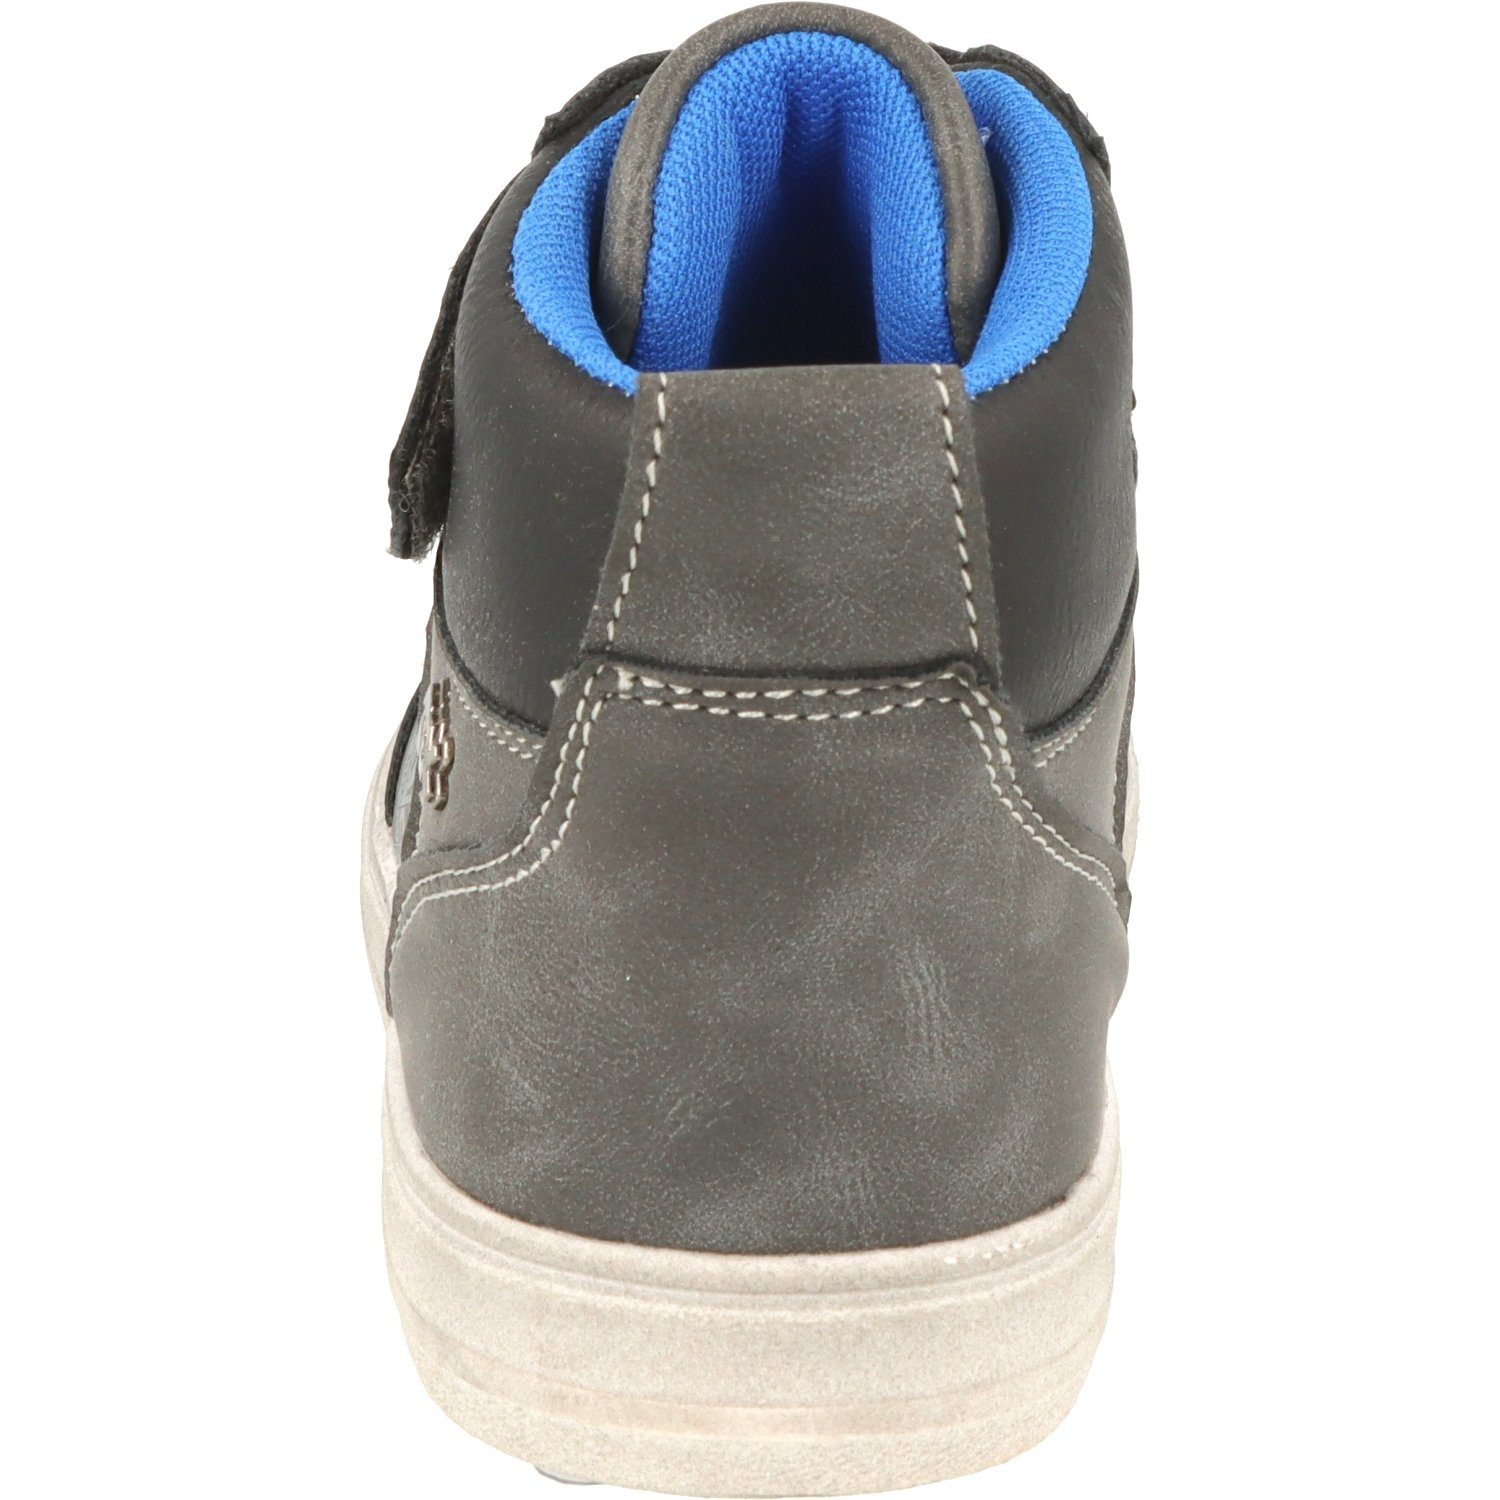 Indigo Wasserabweisend Sneaker Jungen 451-074 Dk.Grey Schuhe Schnürschuhe Hi-Top